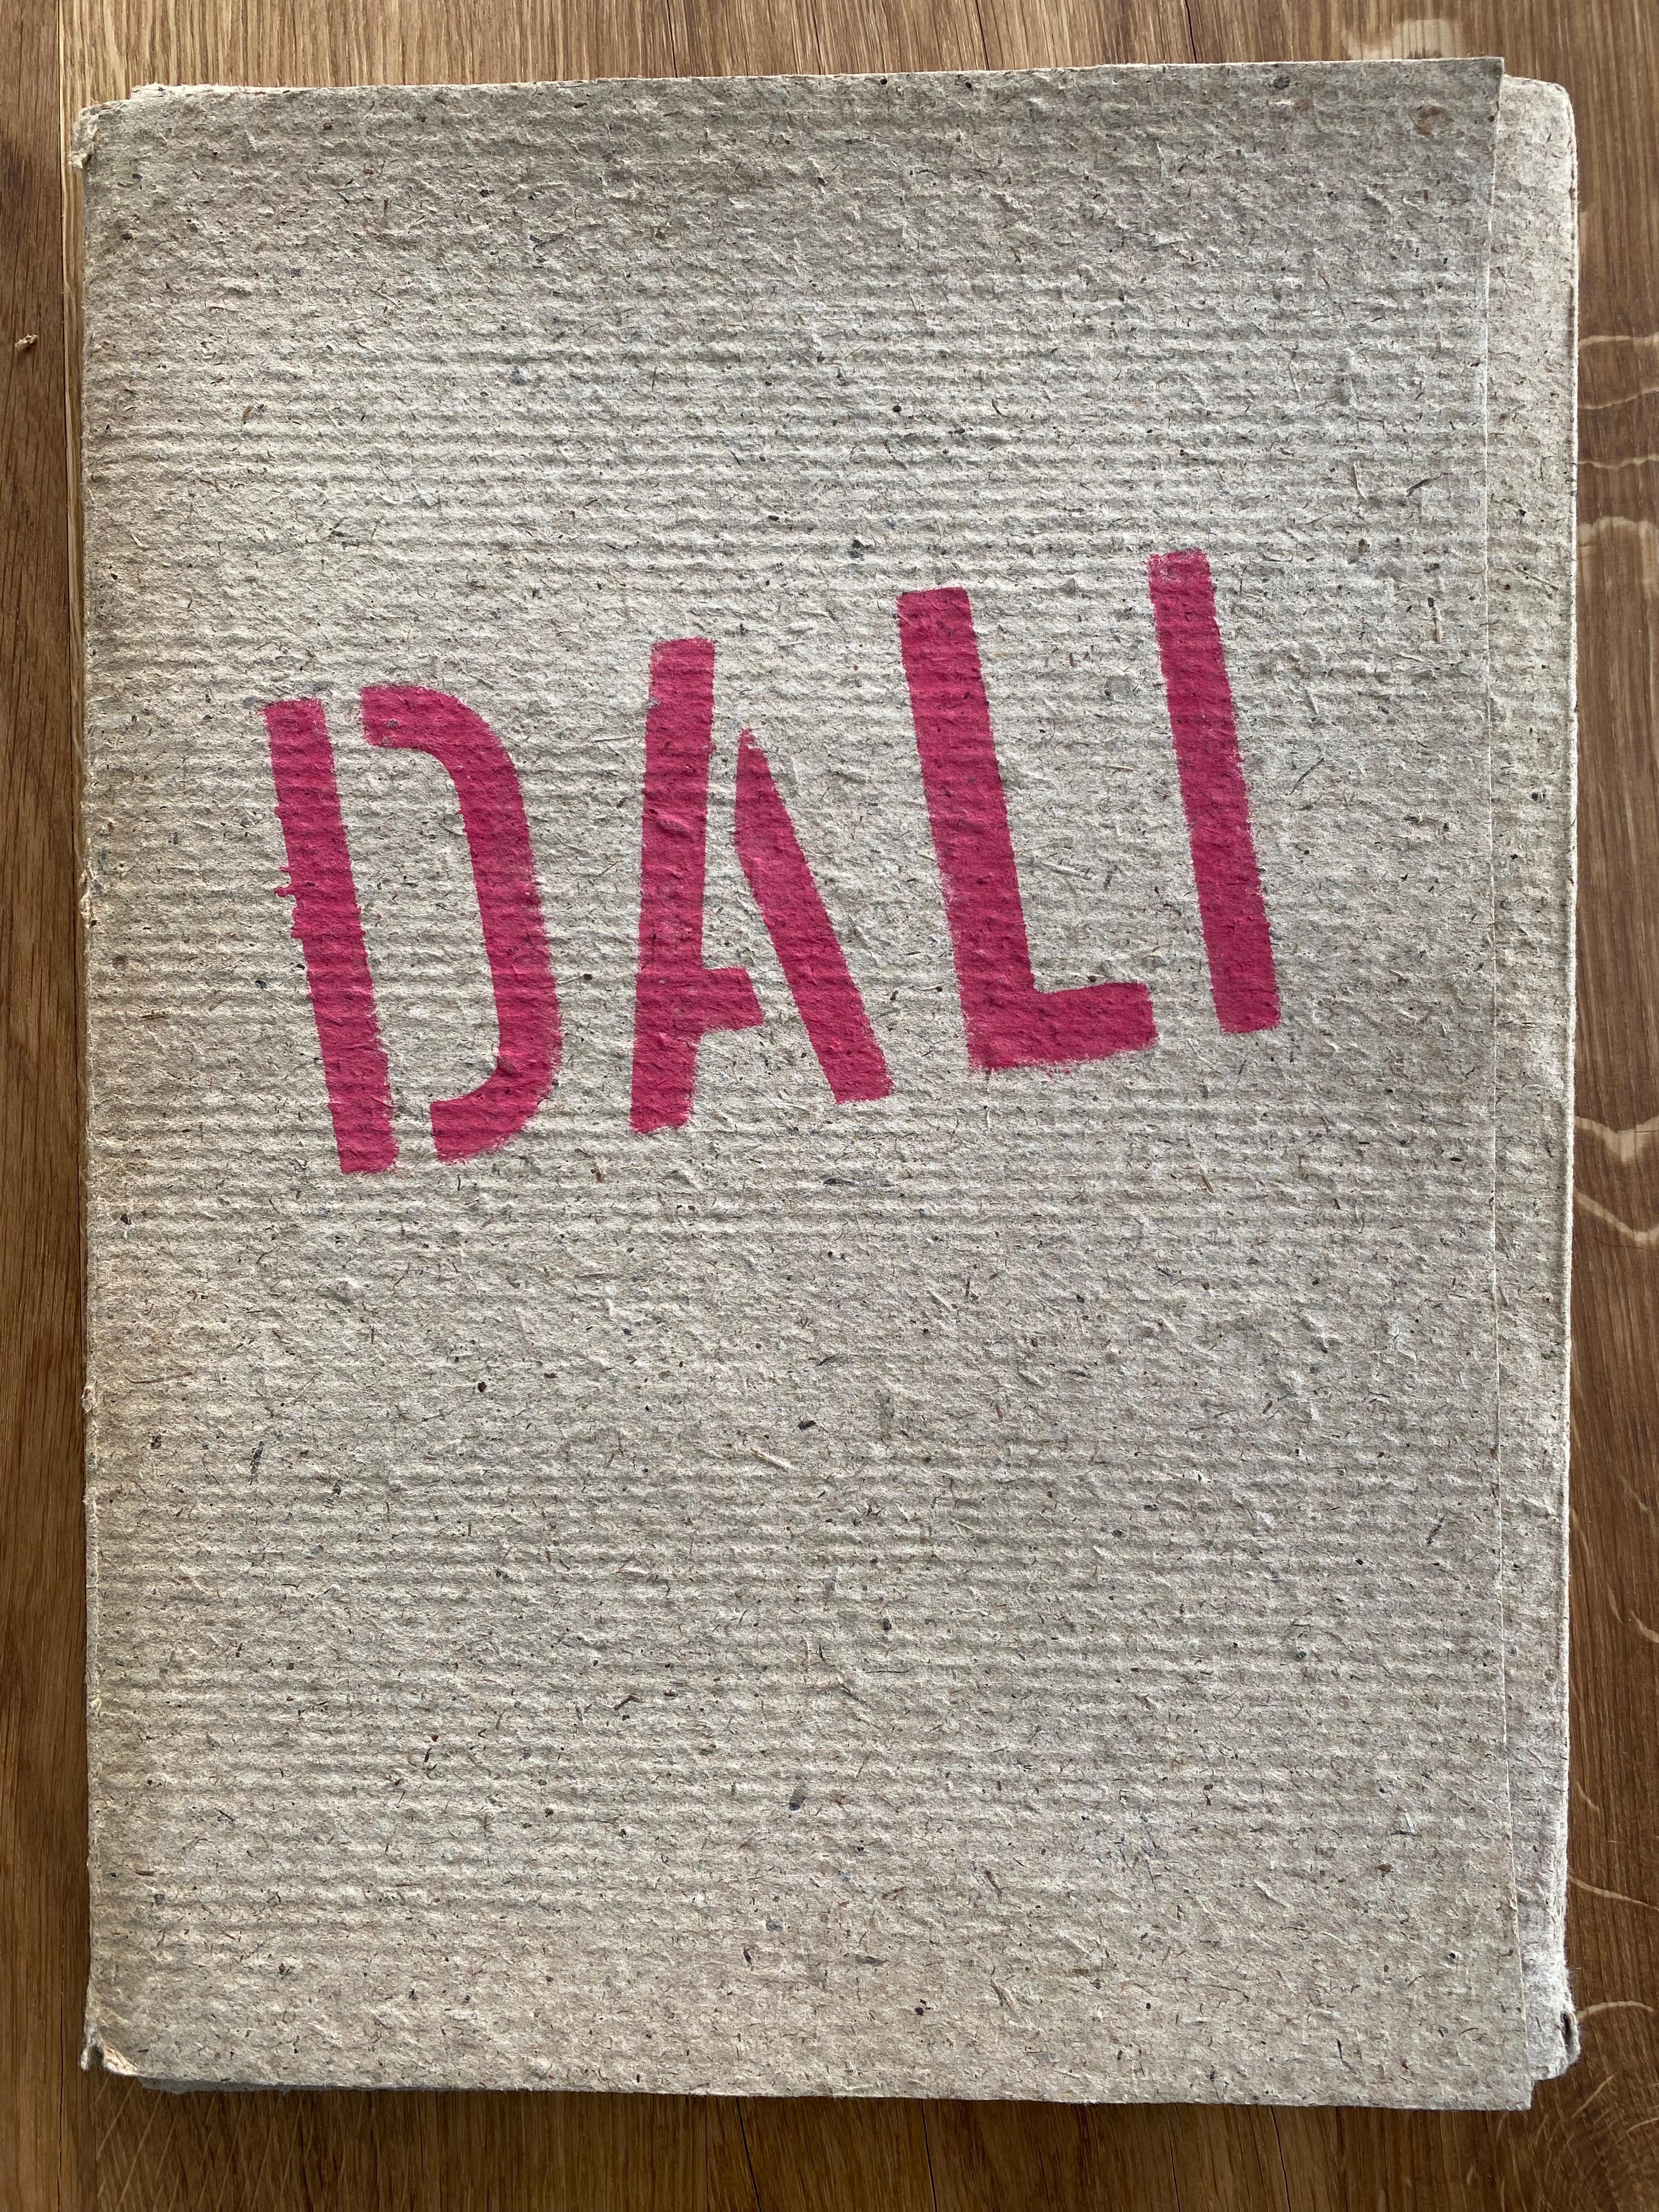 Paper Salvador Dali  Portfolio expo Prague 1967  Complete For Sale